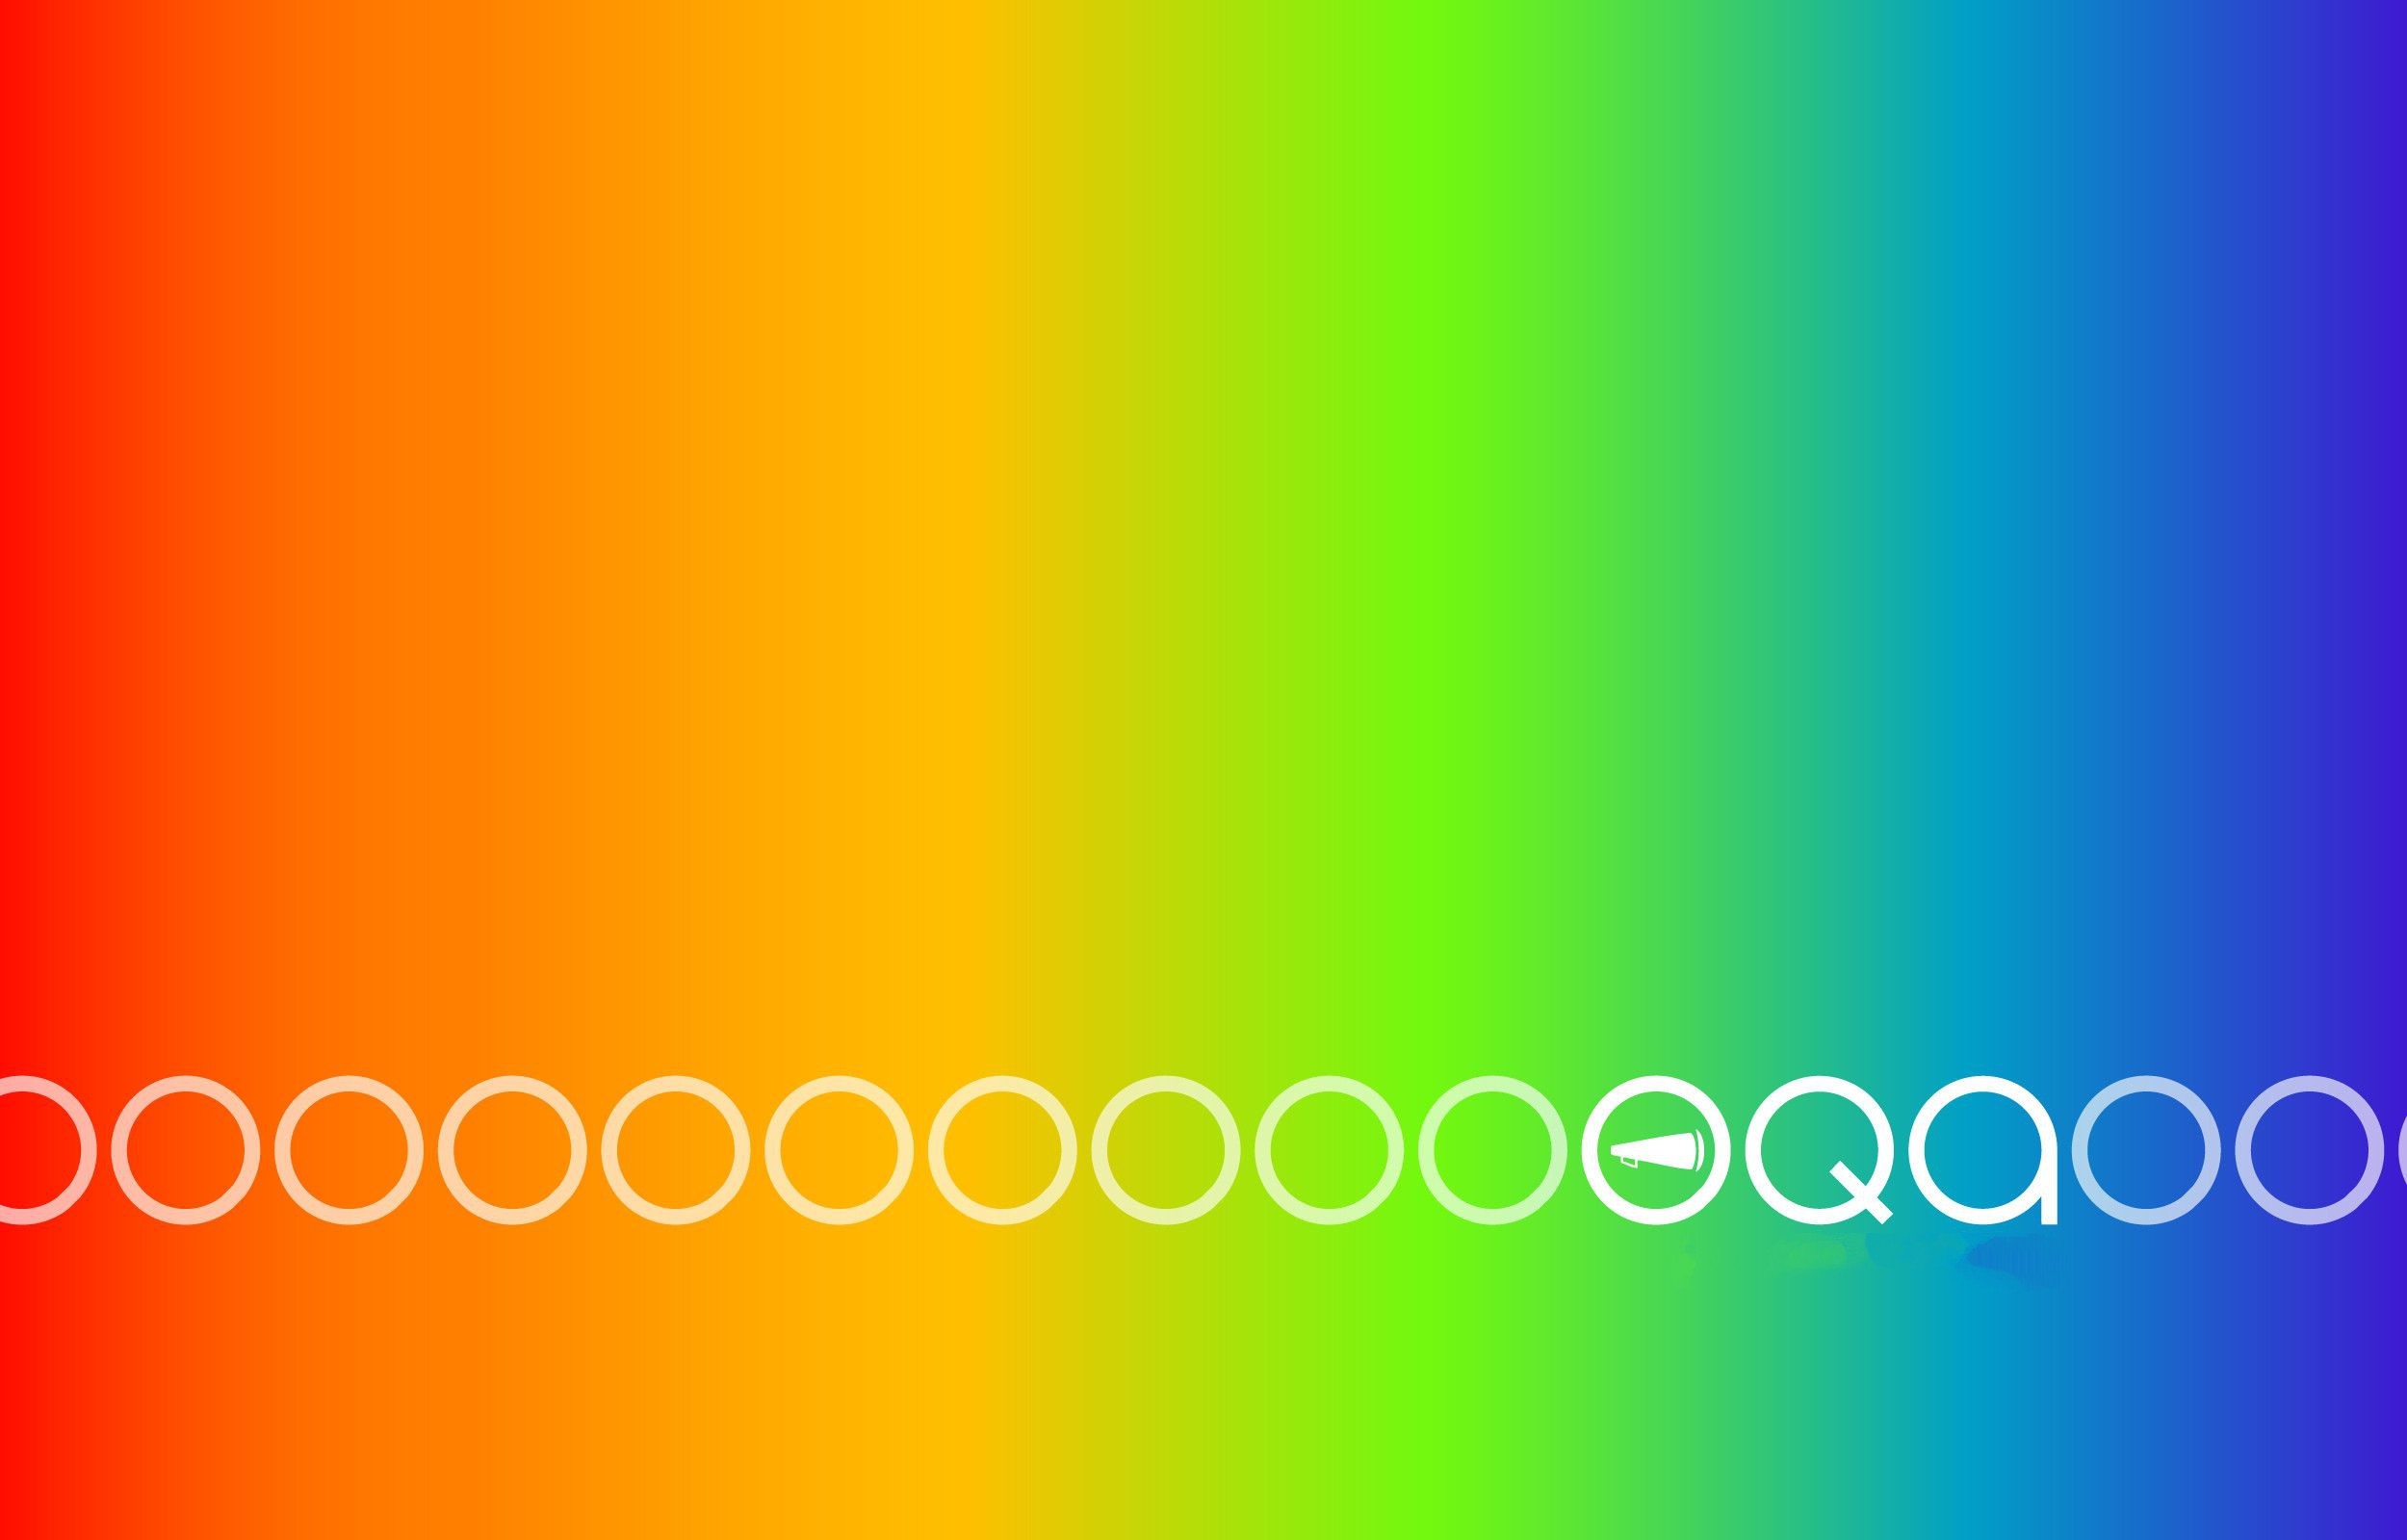 2500x1600 Gay Pride Desktop Wallpaper - WallpaperSafari Gay Pride wallpaper | gay  pride | Pinterest | Gay pride ...